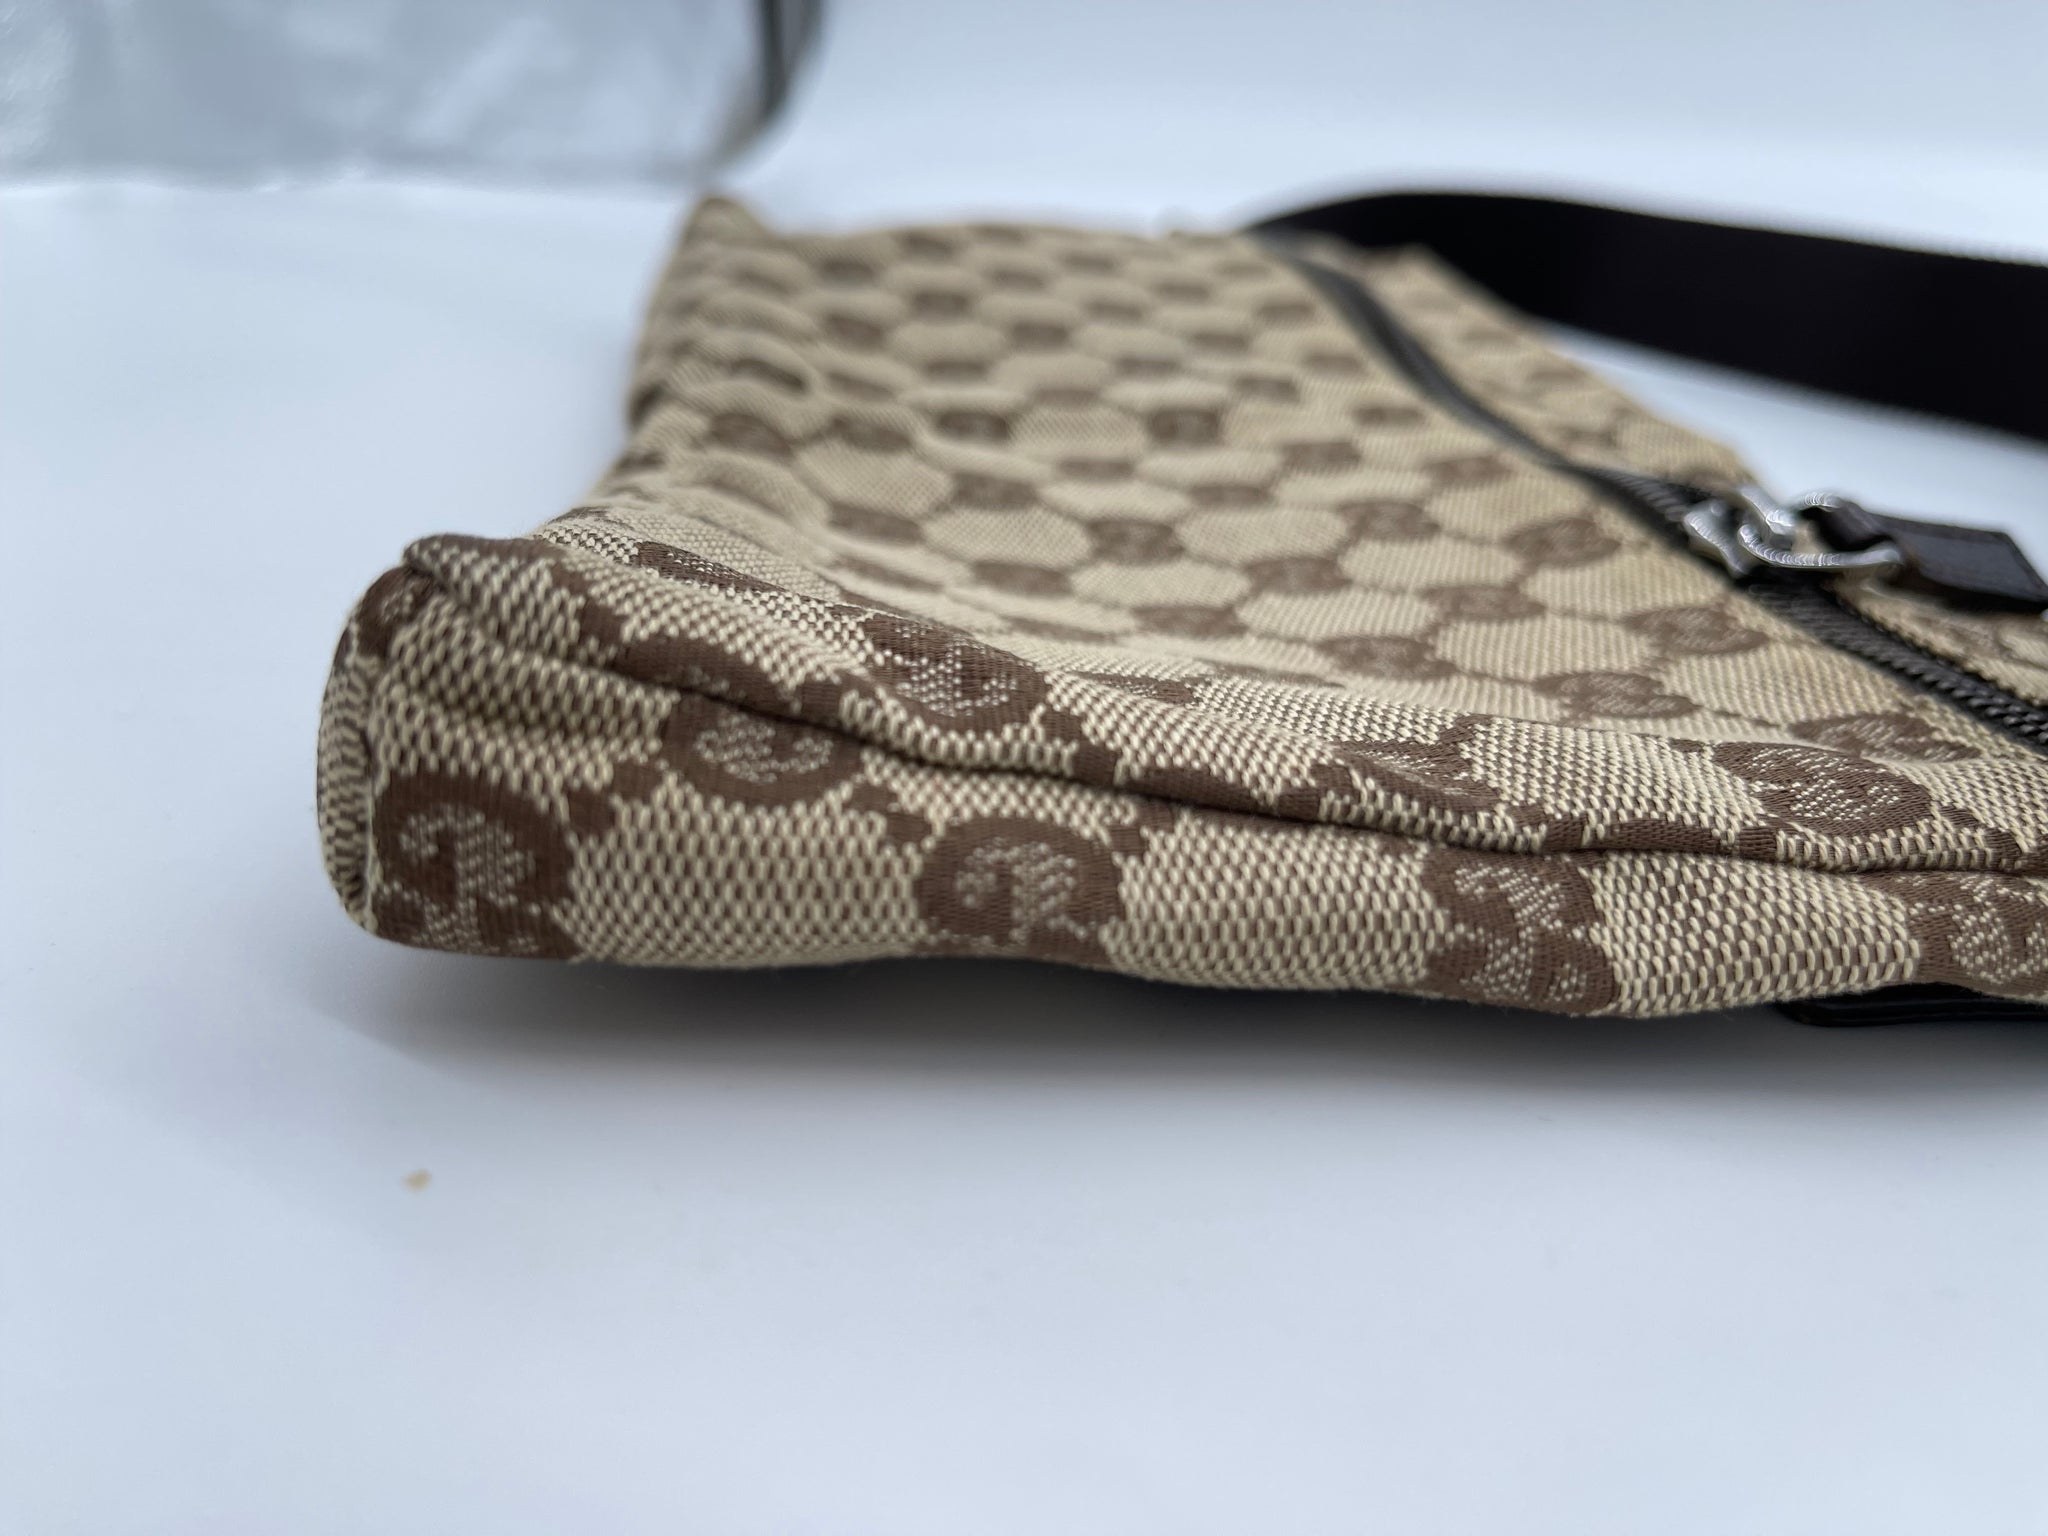 Gucci belt bag 💯💯💯 original italy - Ts Original boutique